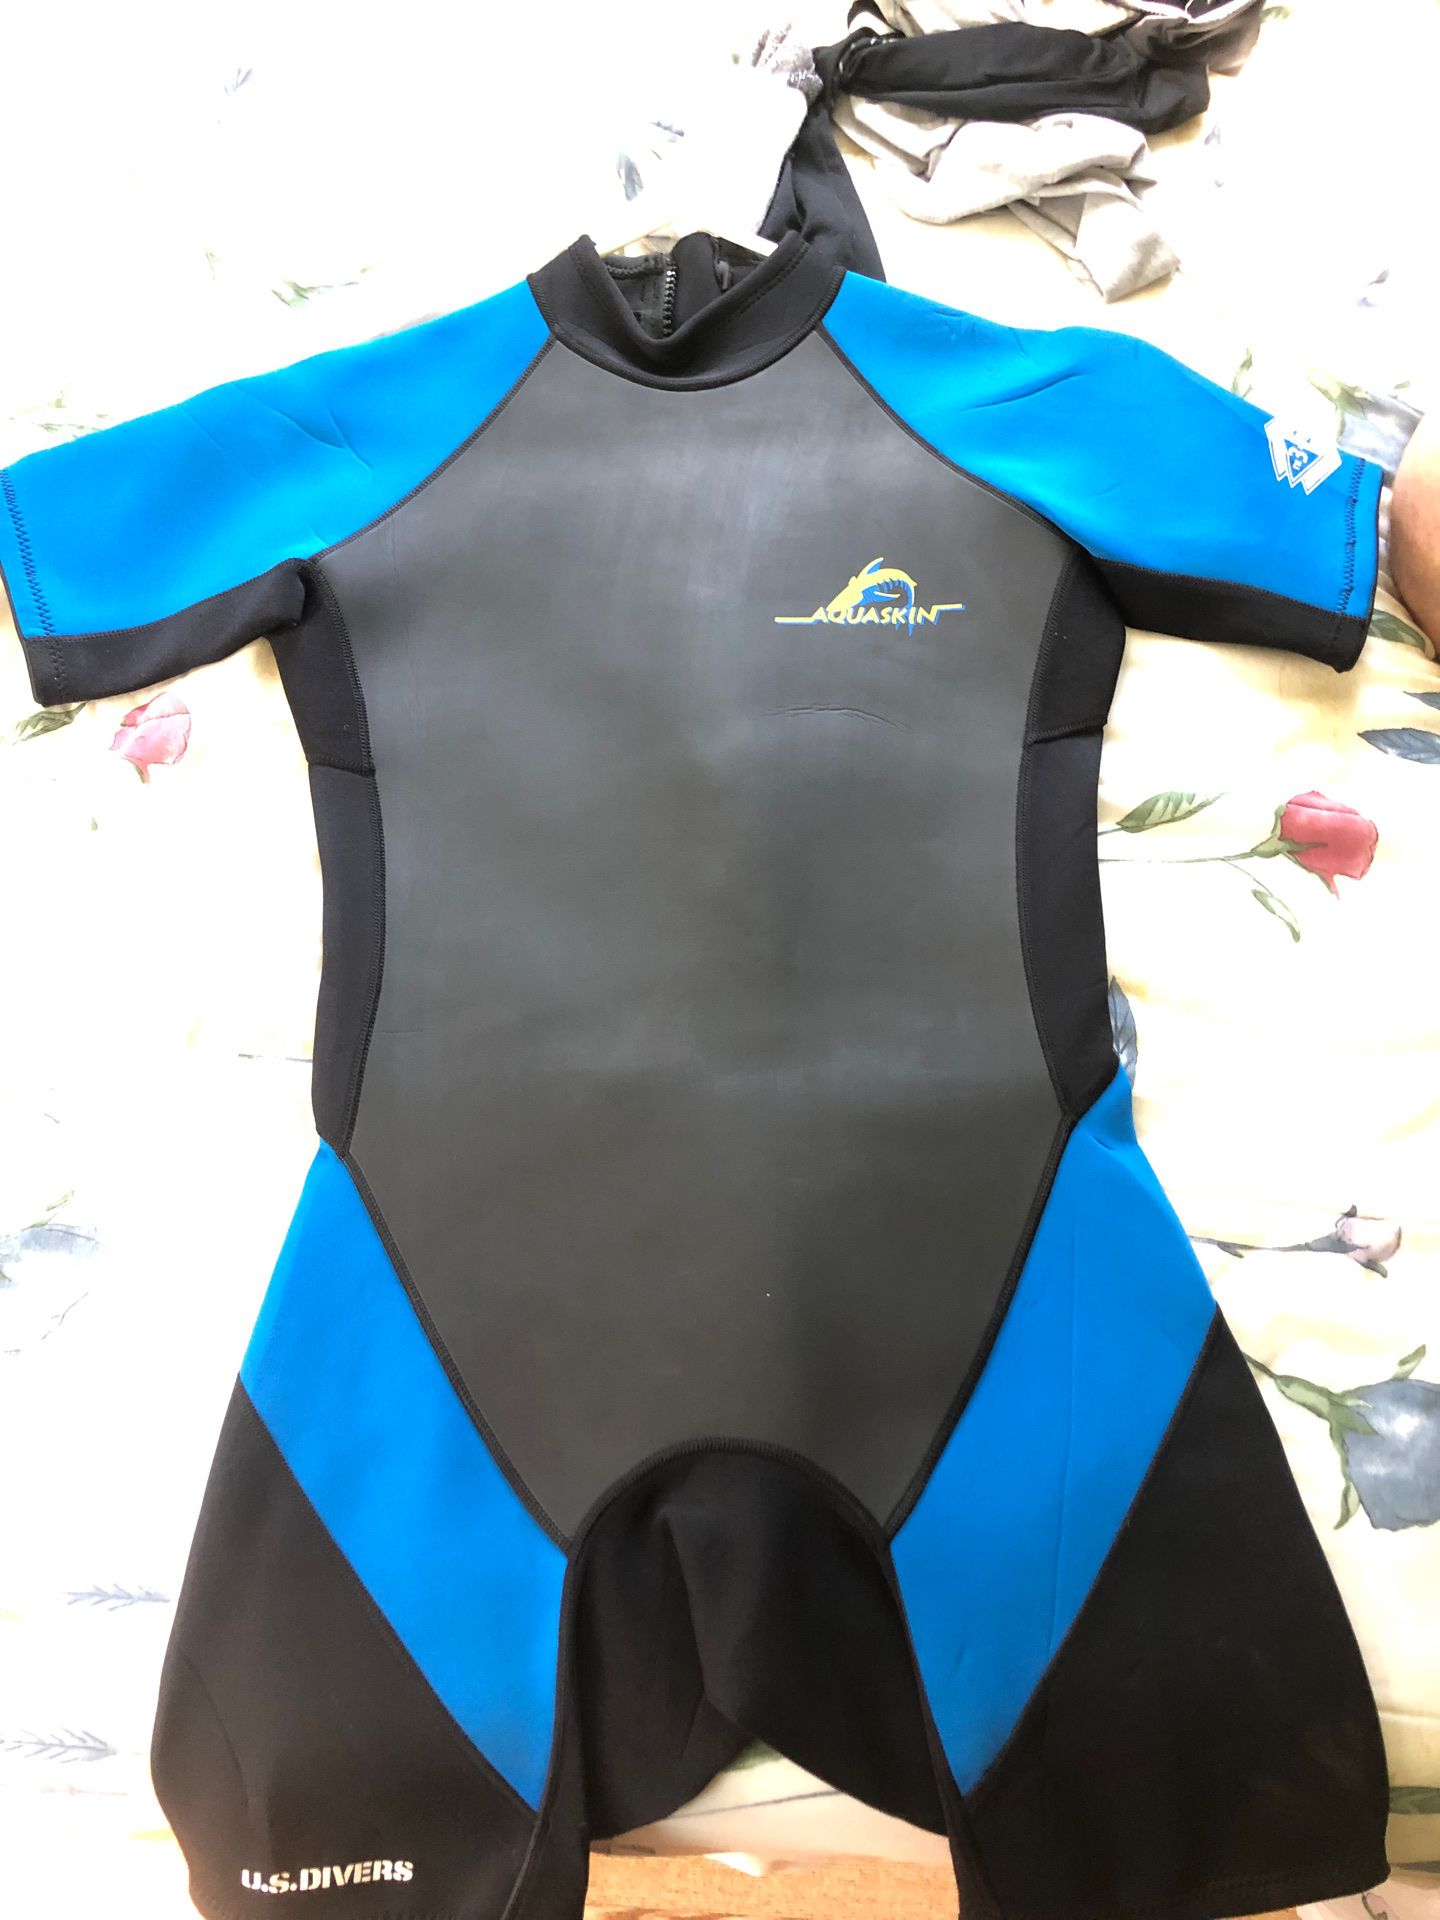 Aquaskin wet suit